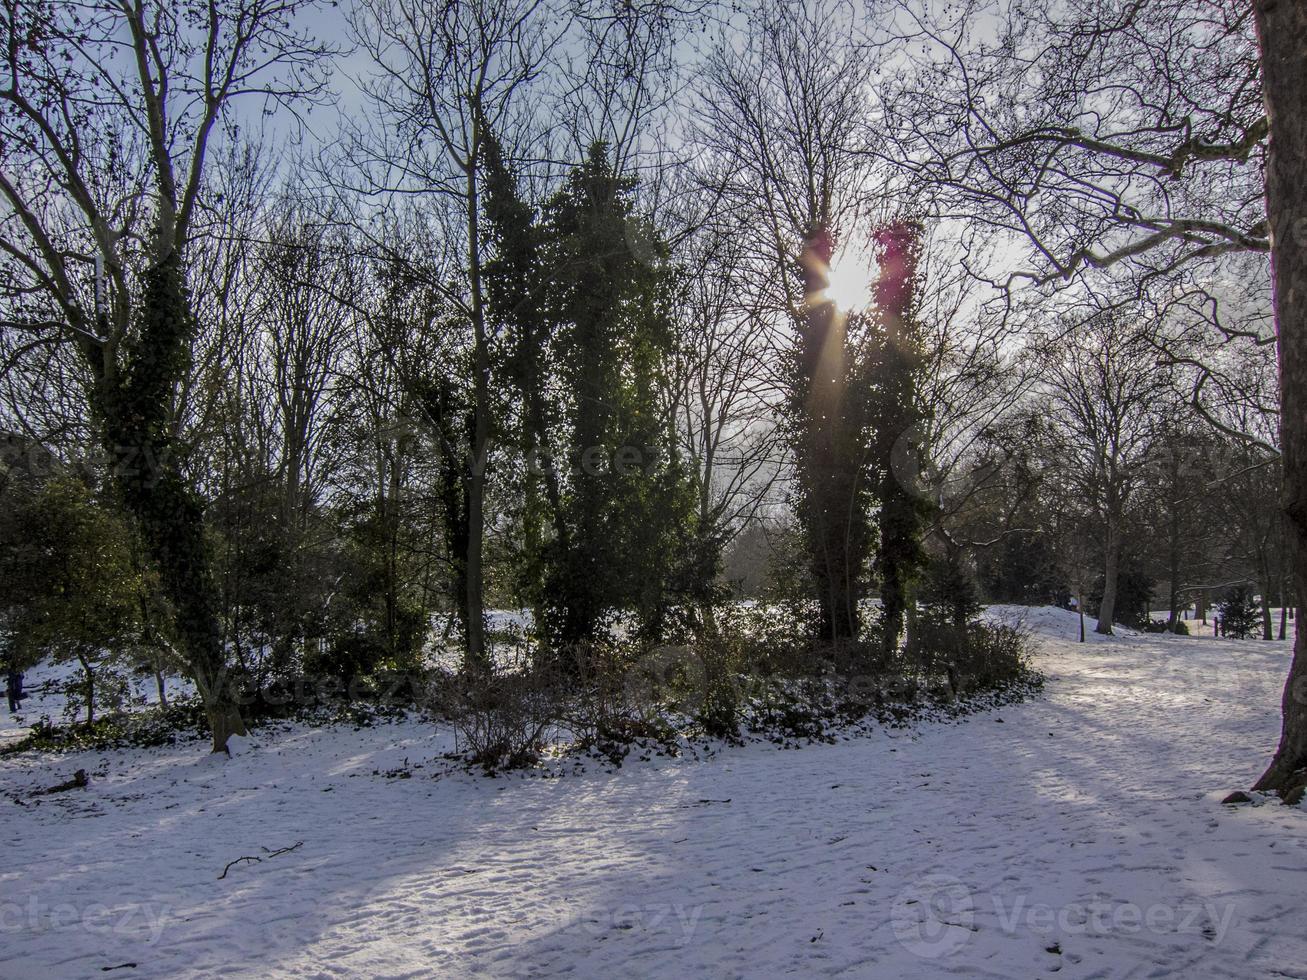 arbres et végétation en hiver sur la neige dans un parc photo